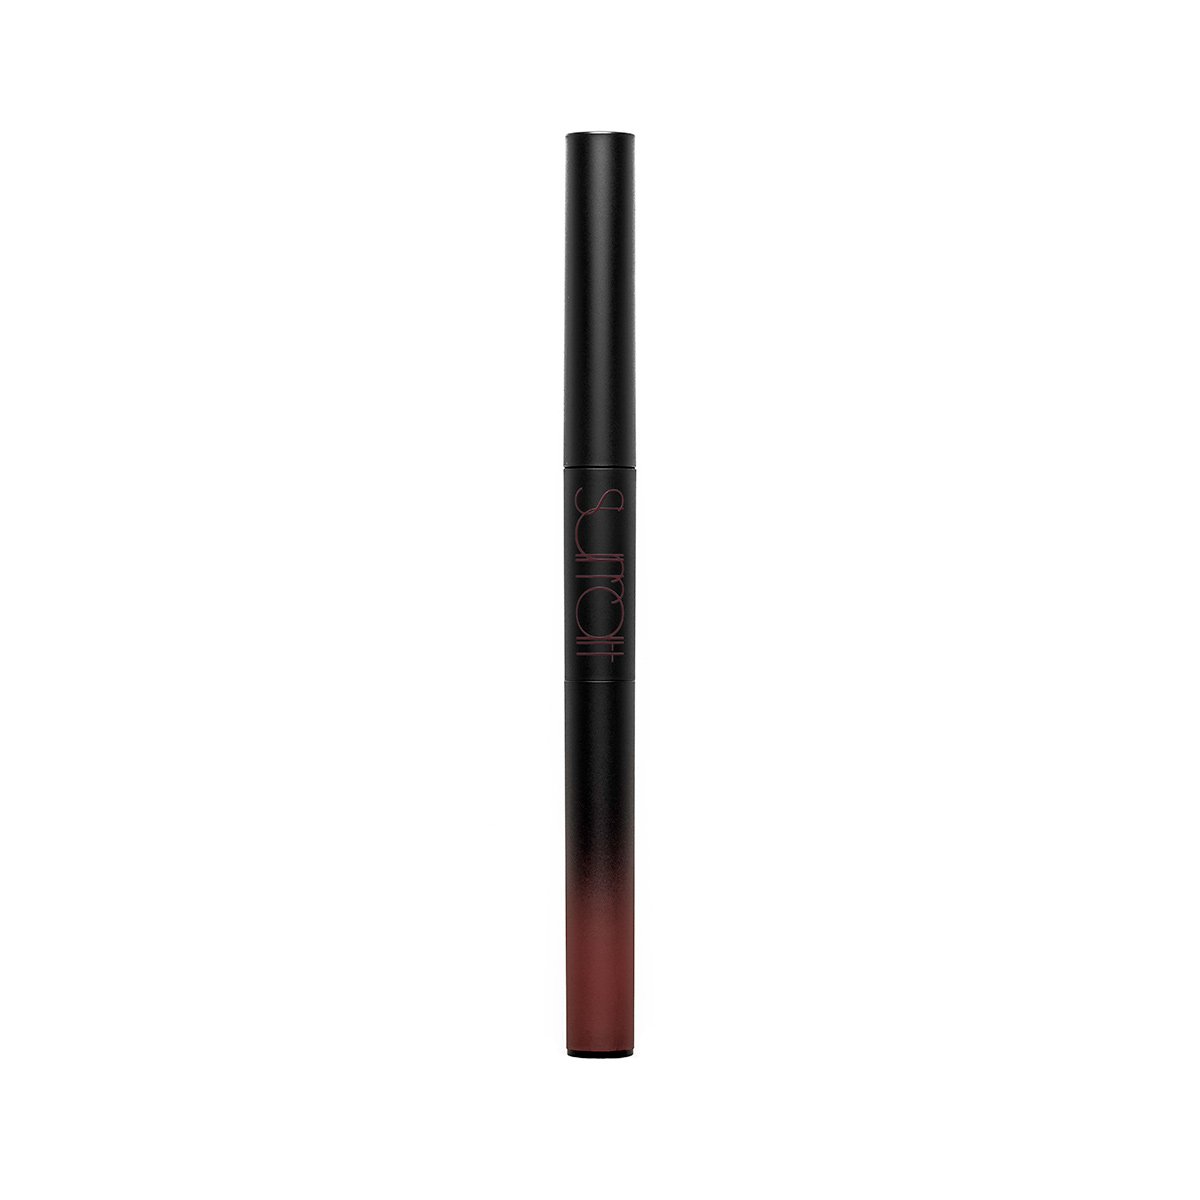 QUAINTRELLE - ROSE - dual-ended matte lipstick lip powder pencil